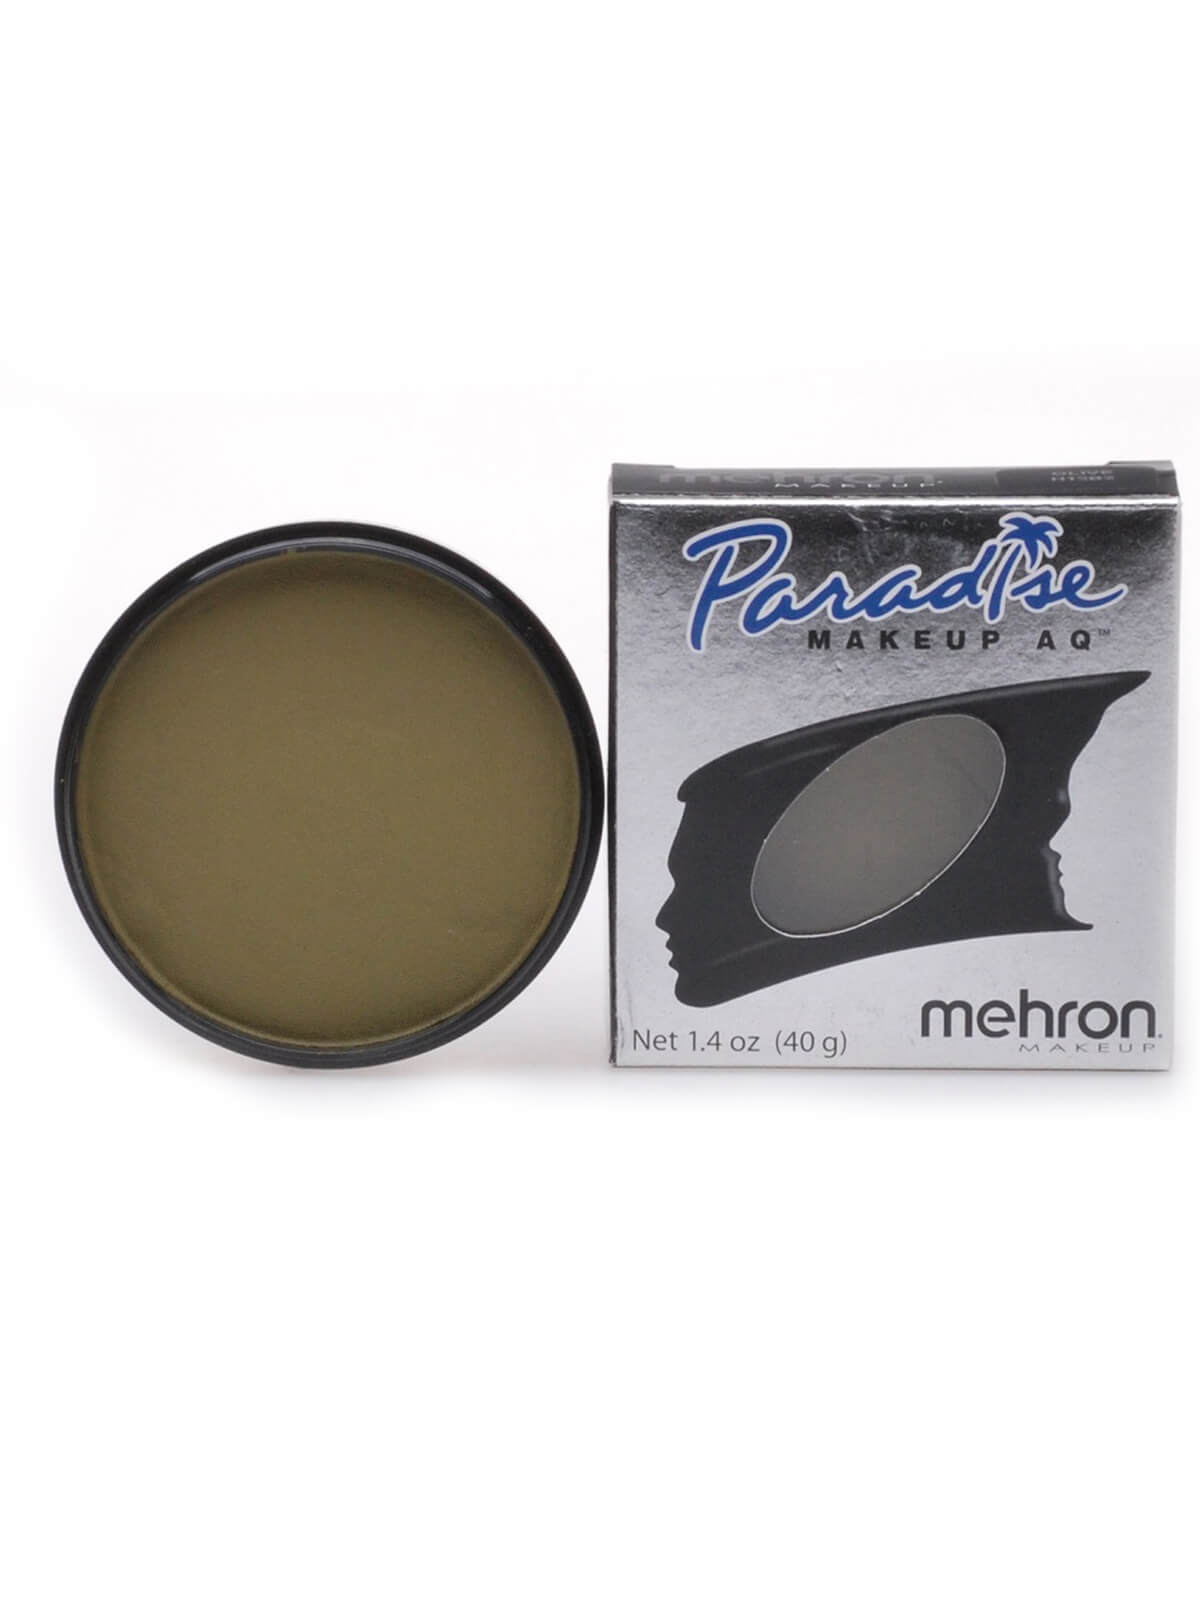 Mehron Paradise Makeup AQ - Nuance - Olive